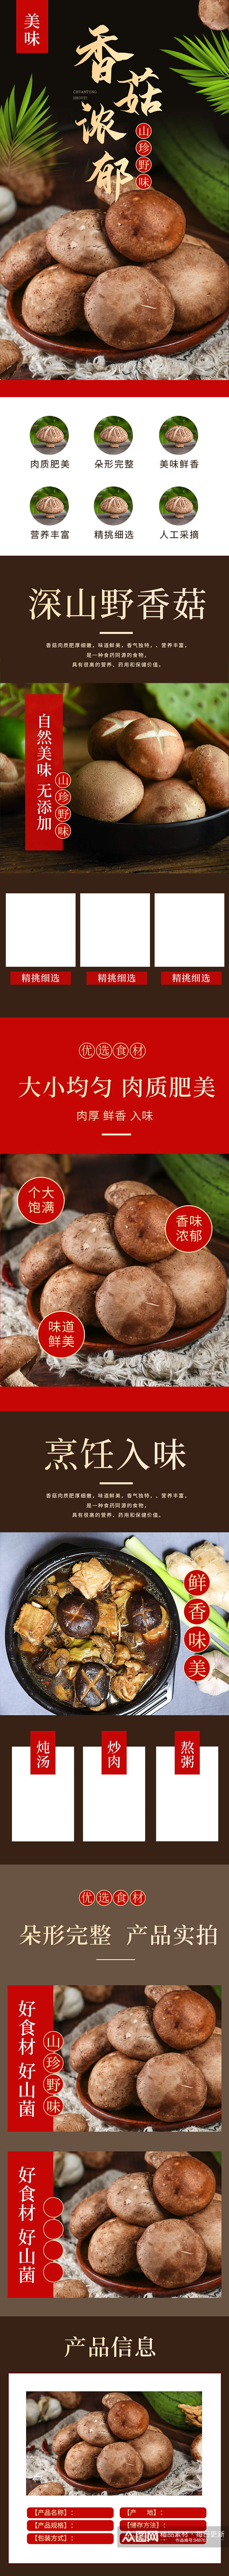 天猫食品生鲜土特产香菇详情页素材